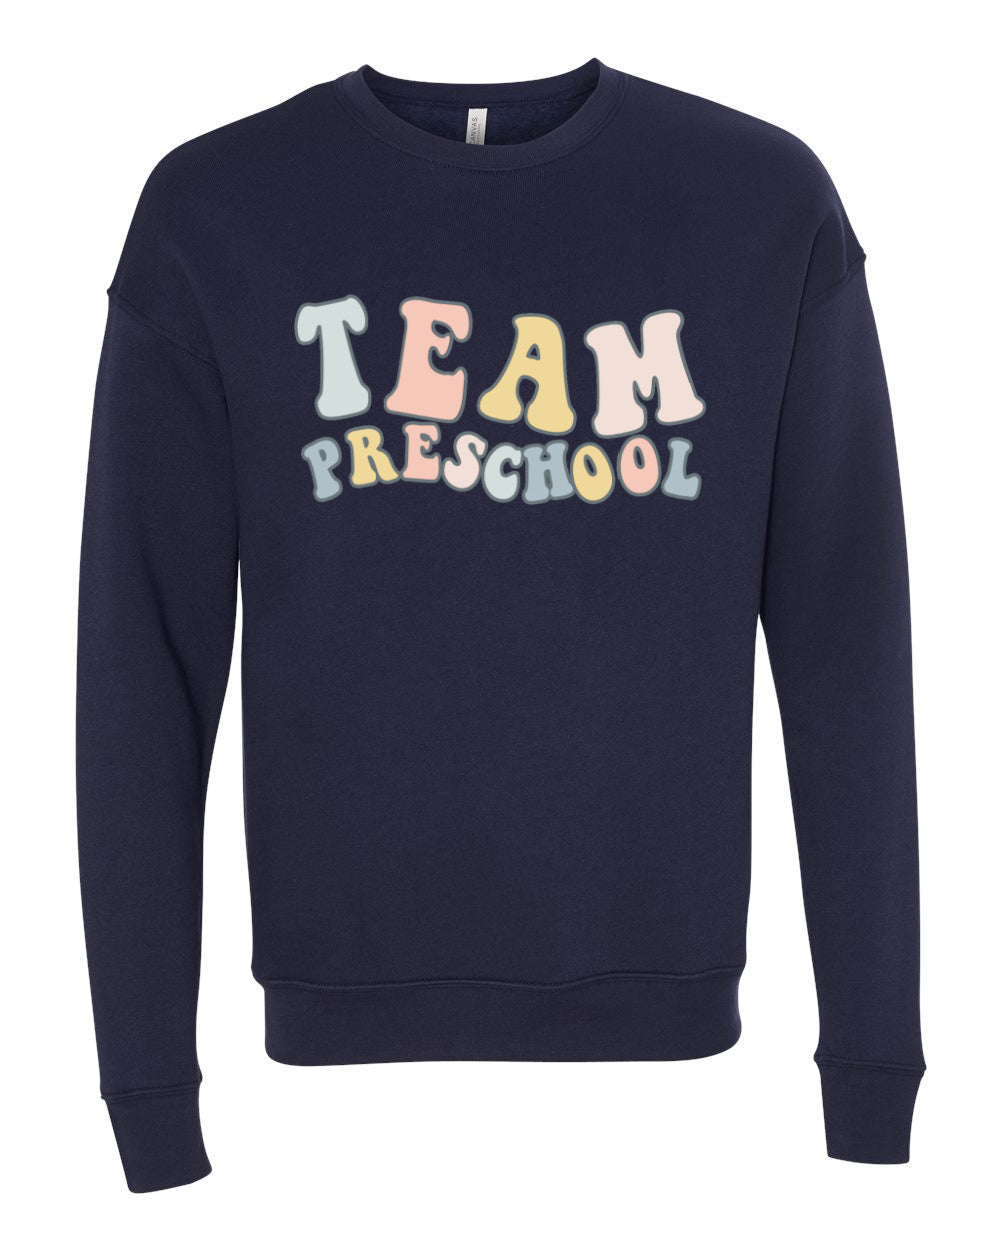 Team Preschool Bella Canvas Sweatshirt - Boutique Soft Style Bella Canvas Sweatshirt